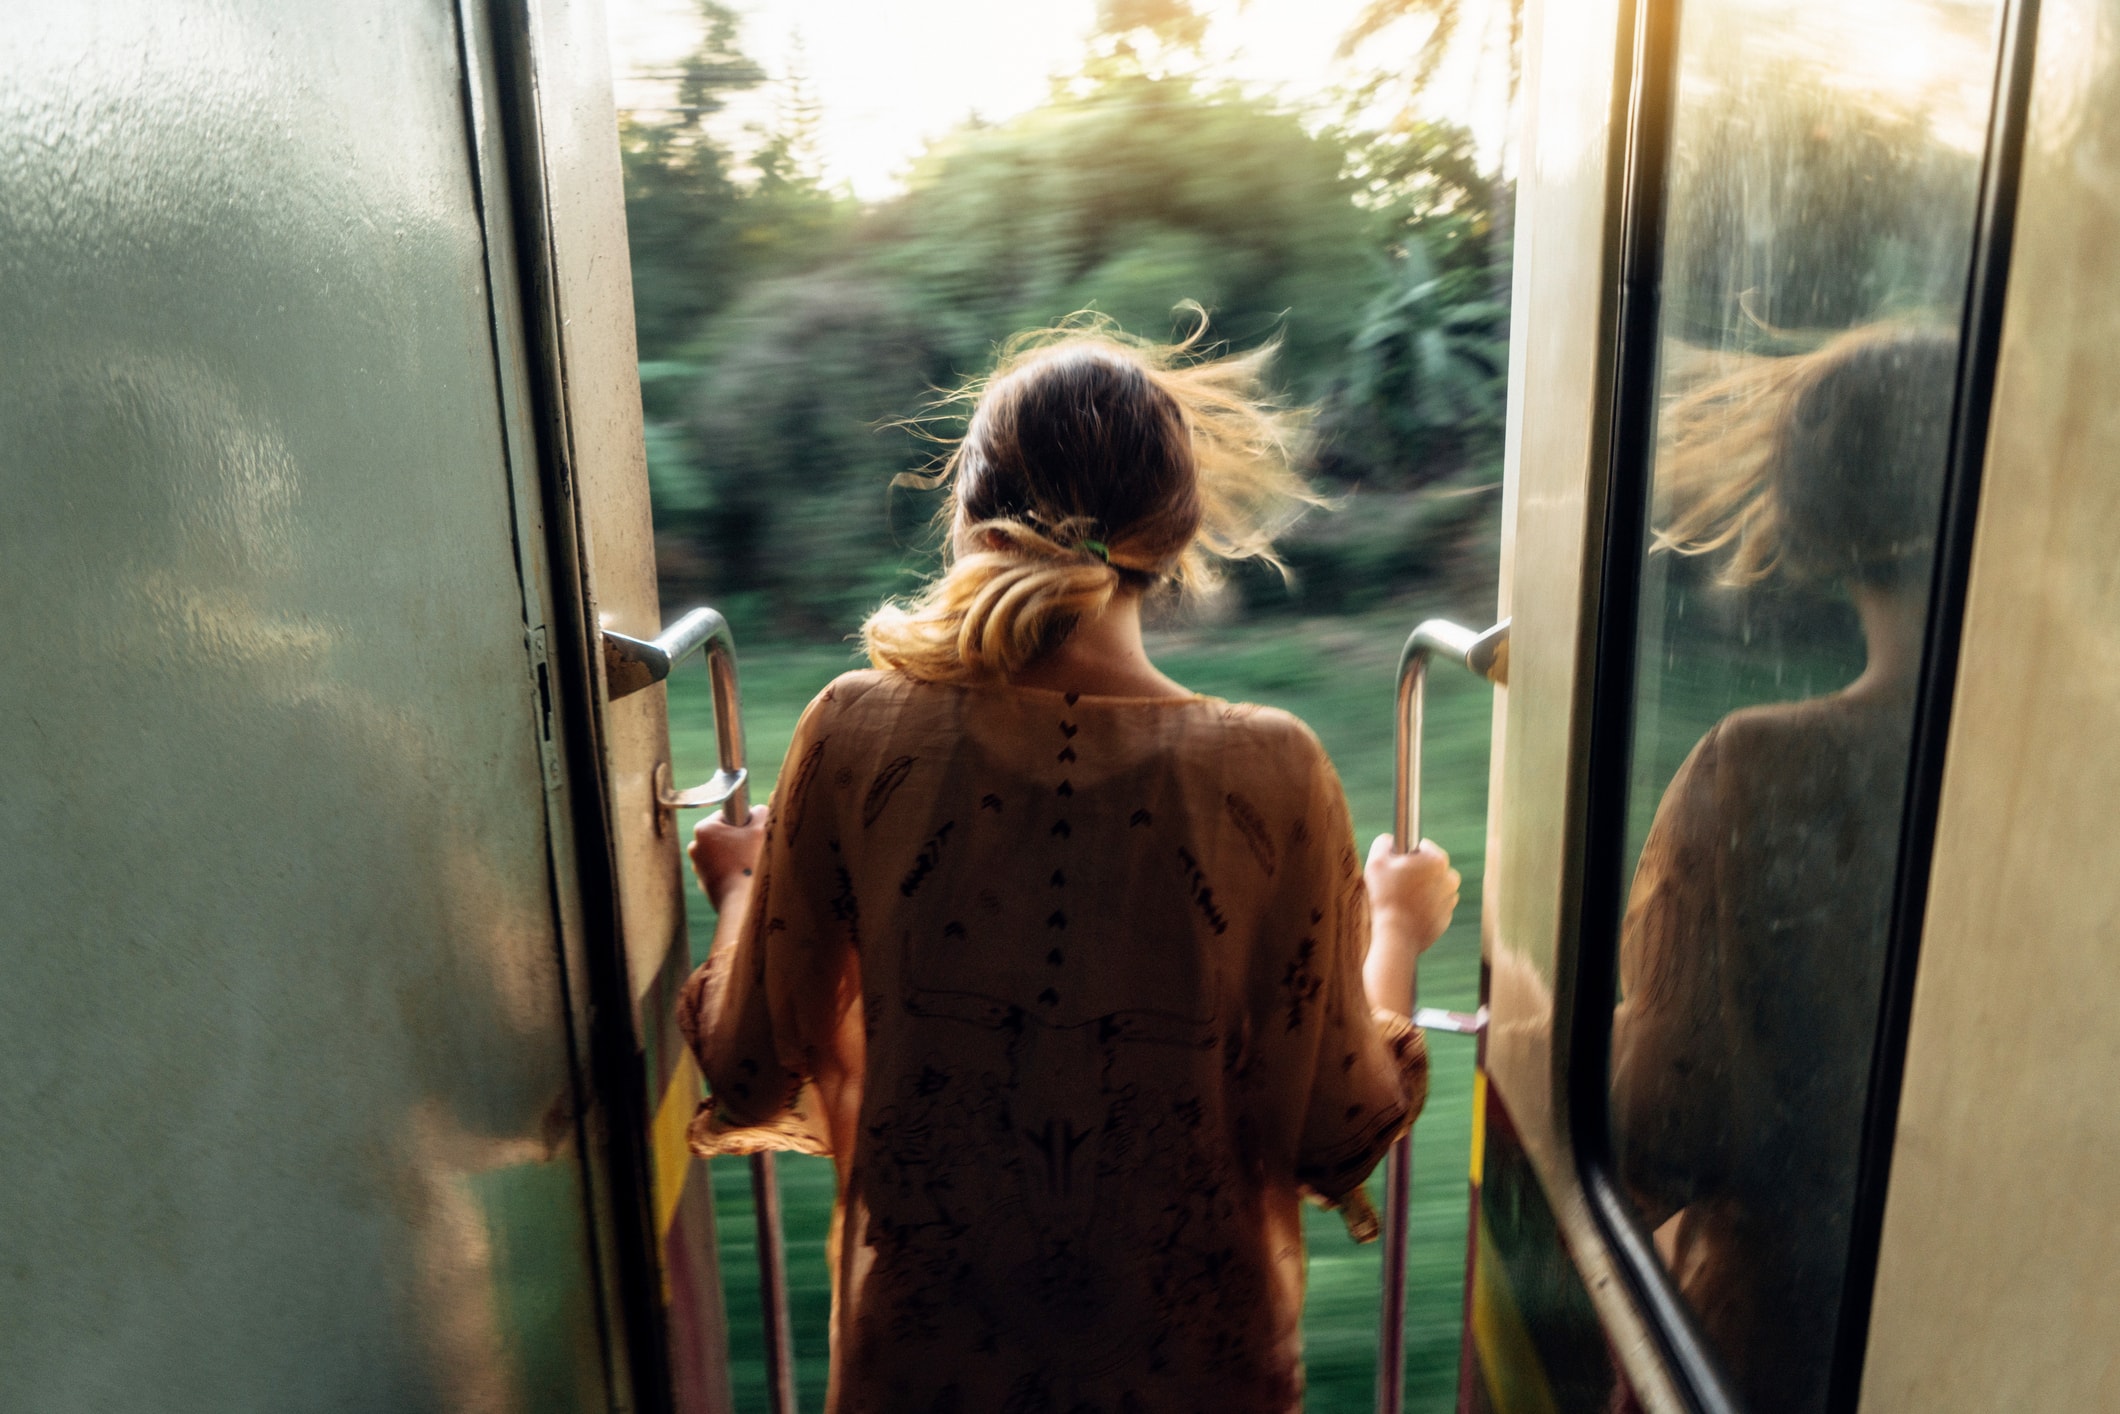 Image d'une fille qui regarde par la fenêtre d'un train en mouvement sur fond flou.